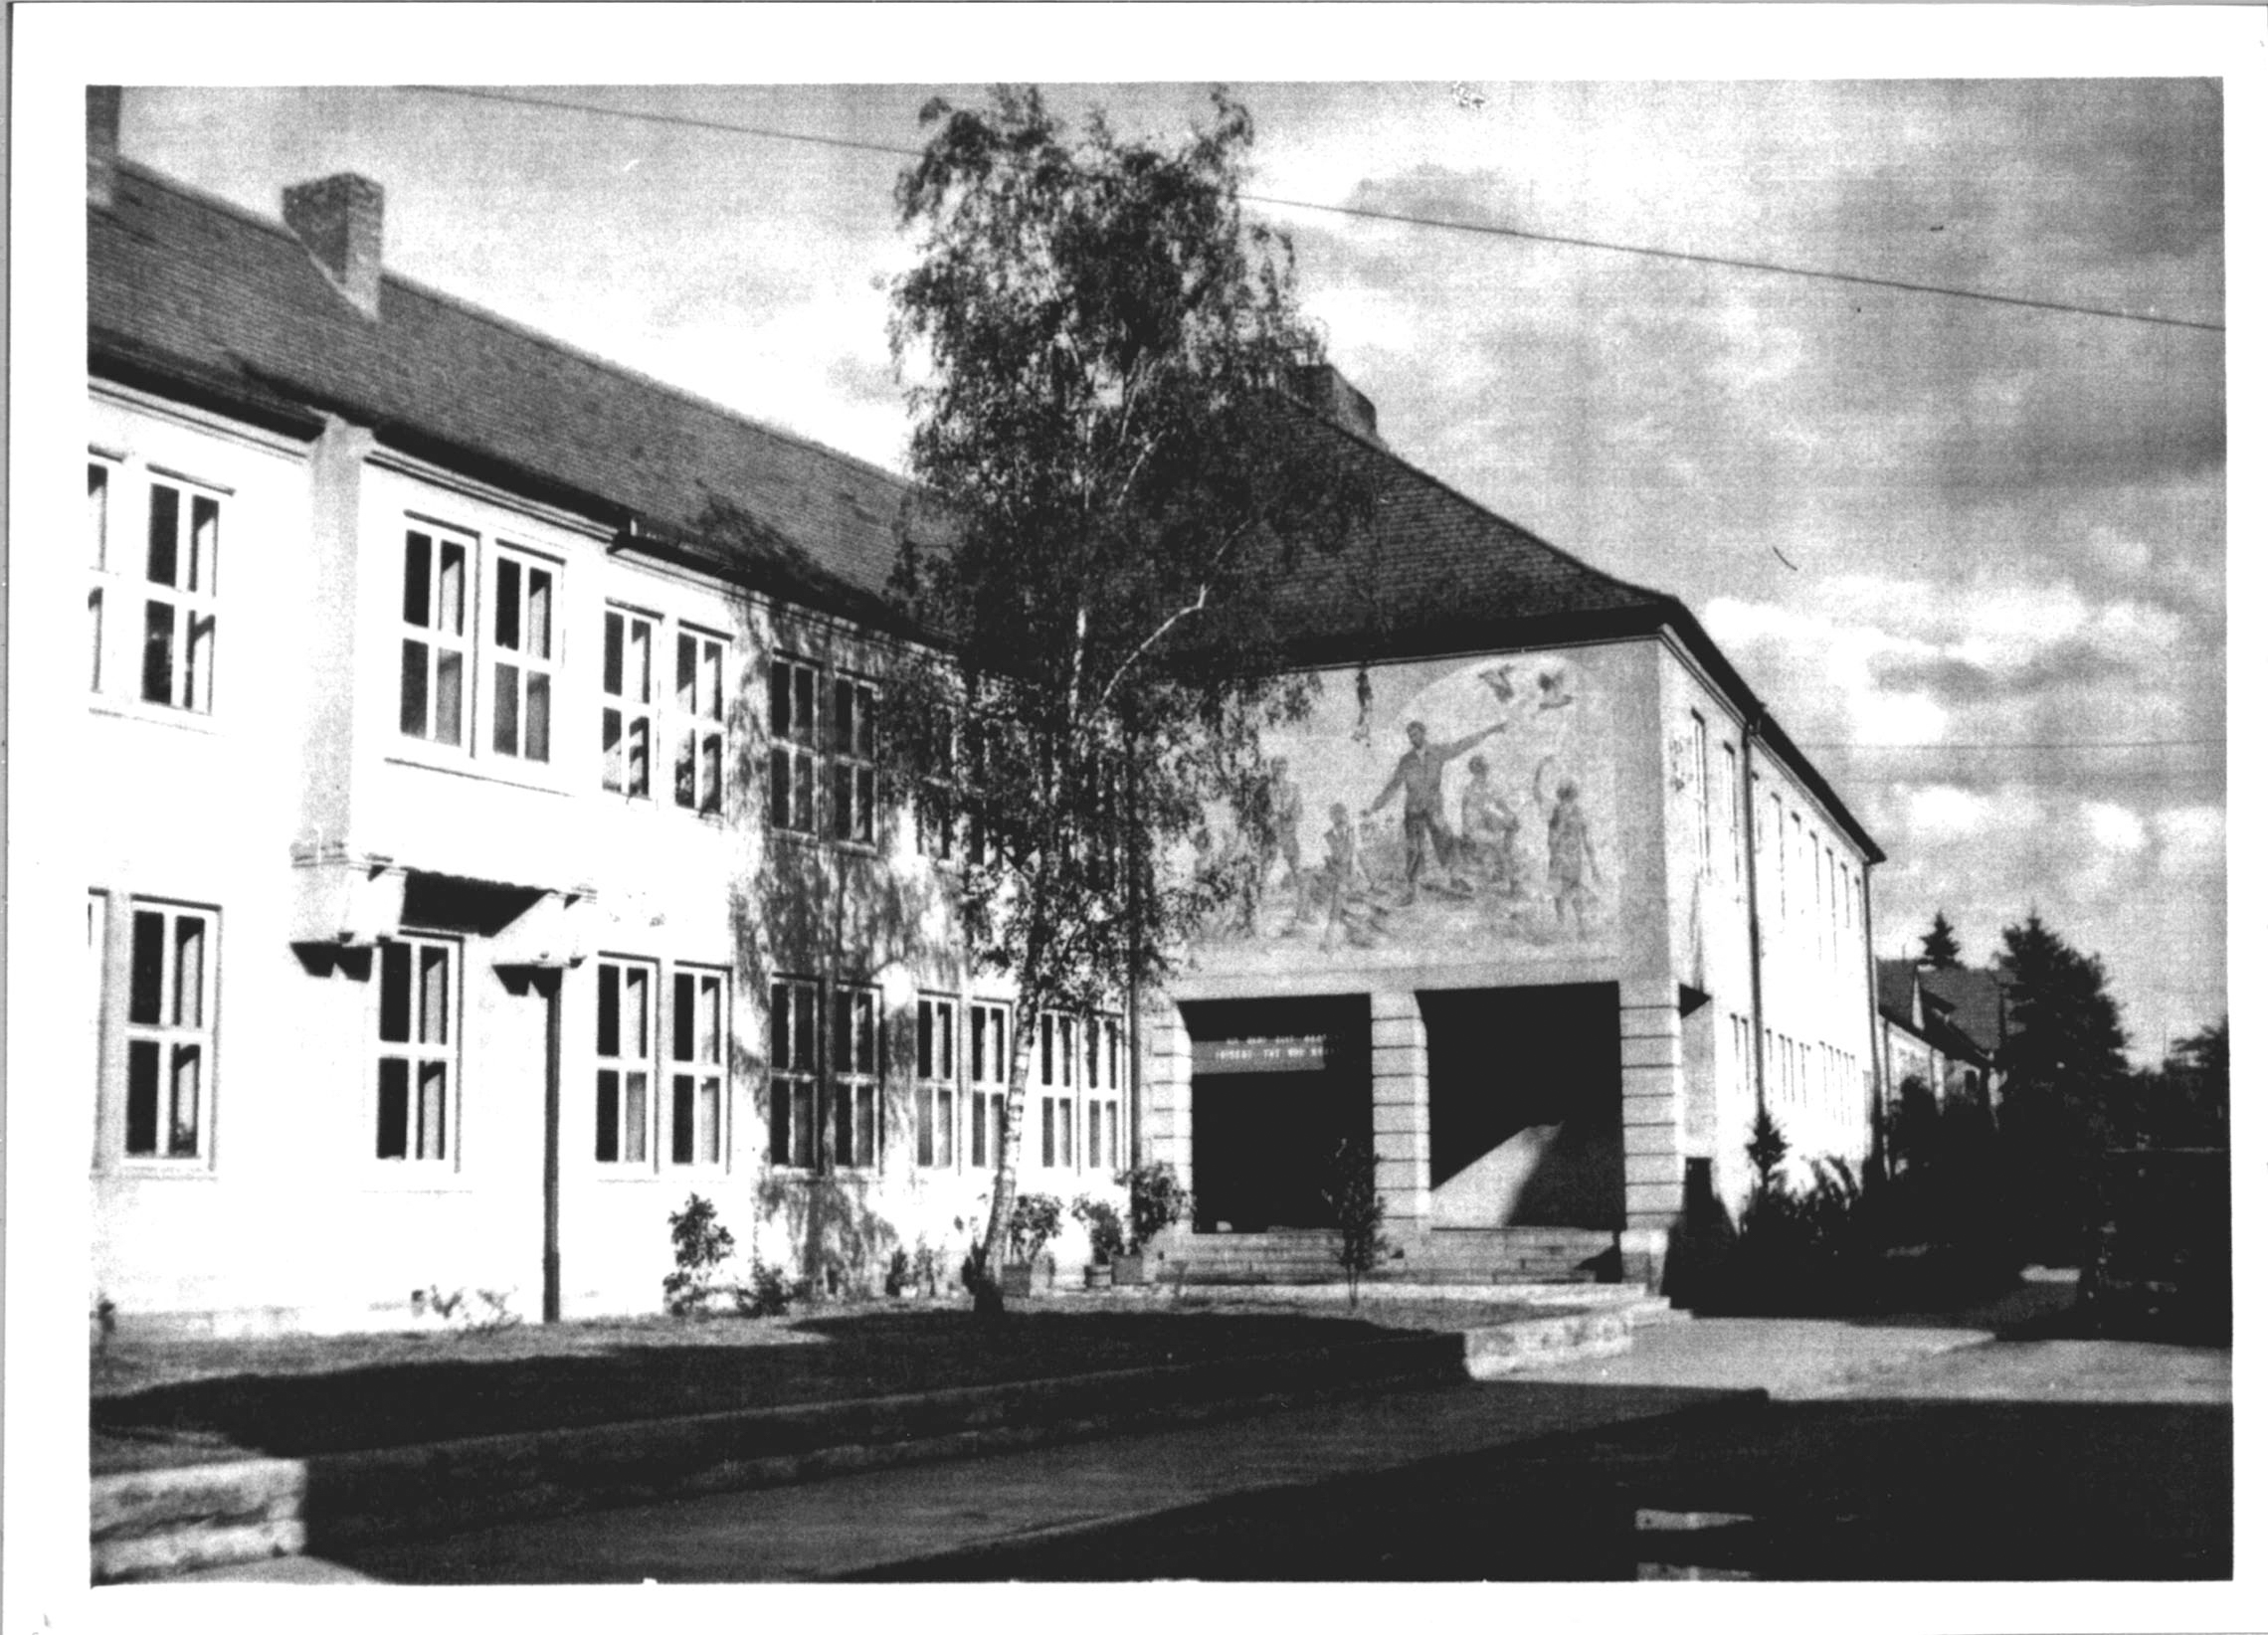 Anne Frank Schule